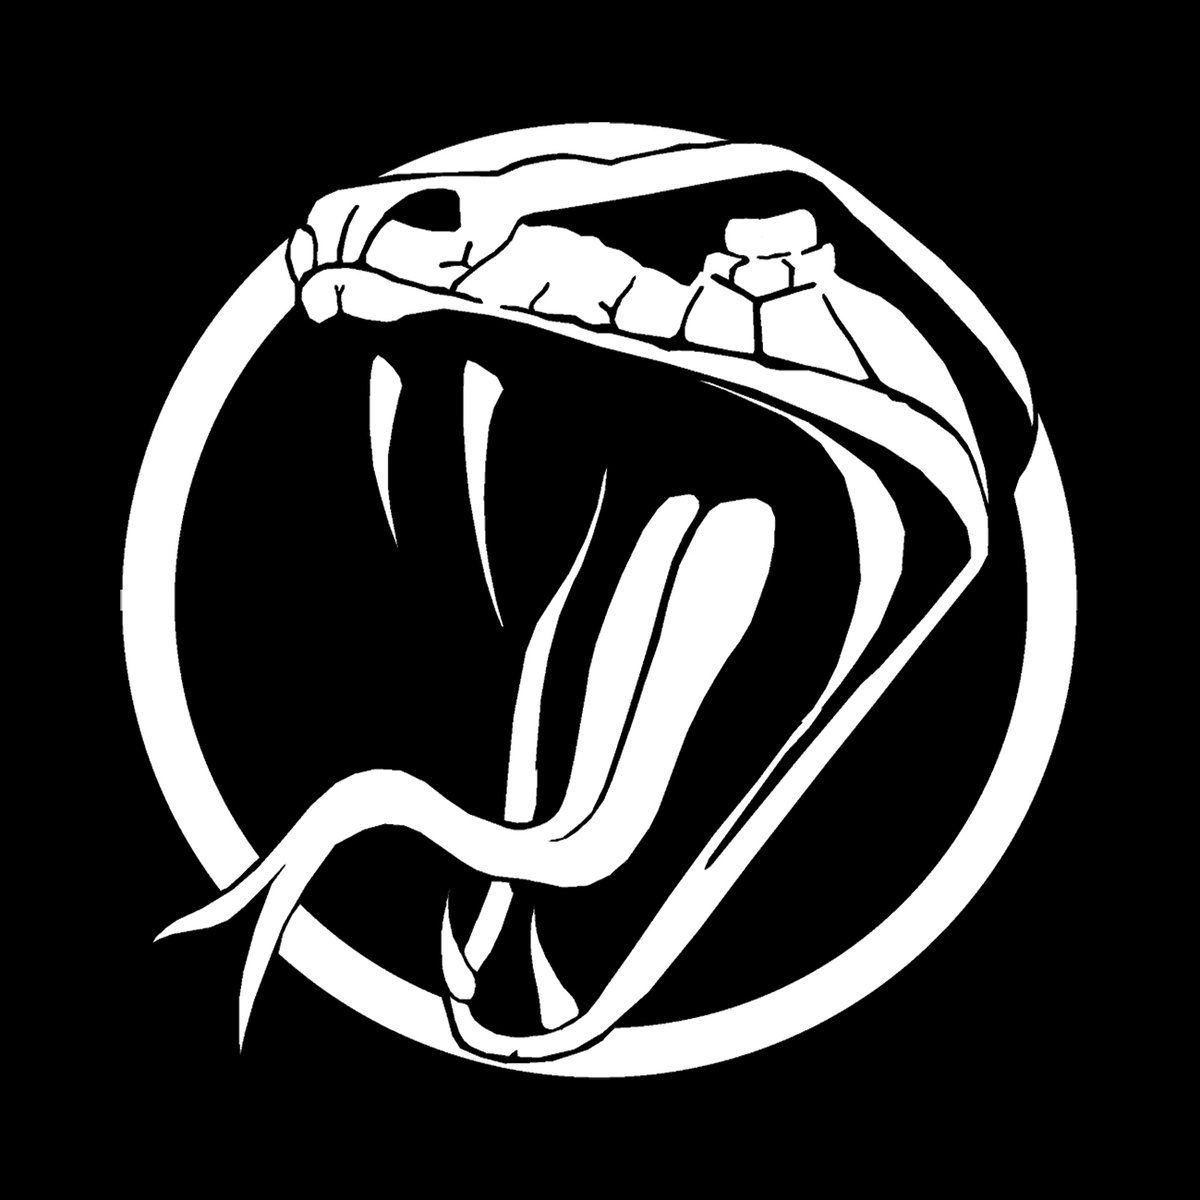 Аватарка змей. Логотип змеи. Кобра на черном фоне. Аватар змея. Кобра аватар.